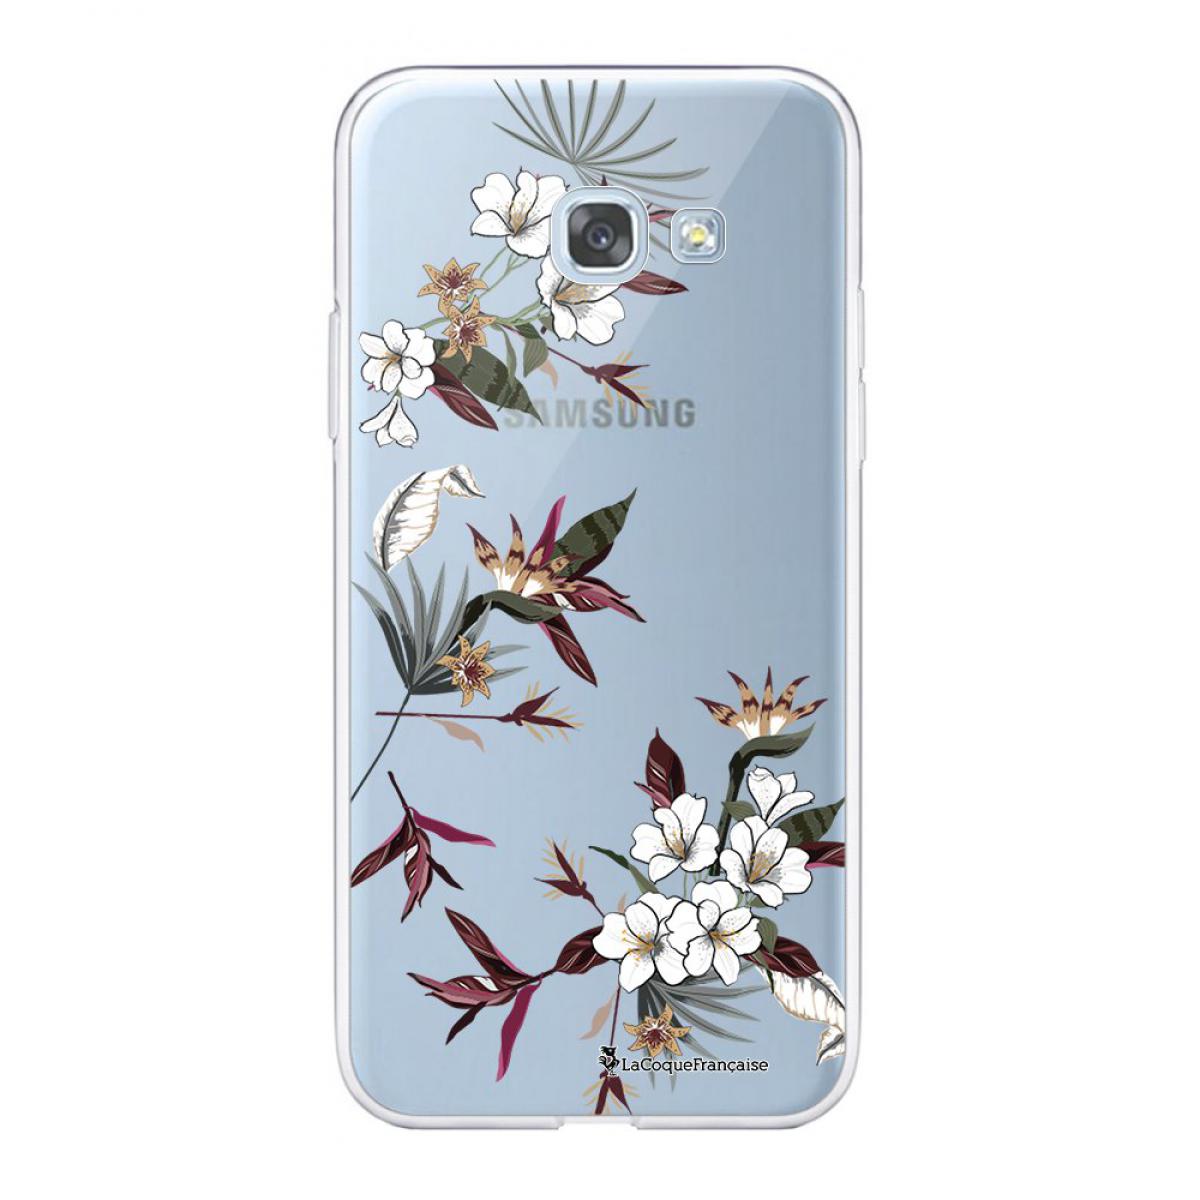 La Coque Francaise - Coque Samsung Galaxy A5 2017 360 intégrale transparente Fleurs Sauvages Tendance La Coque Francaise. - Coque, étui smartphone